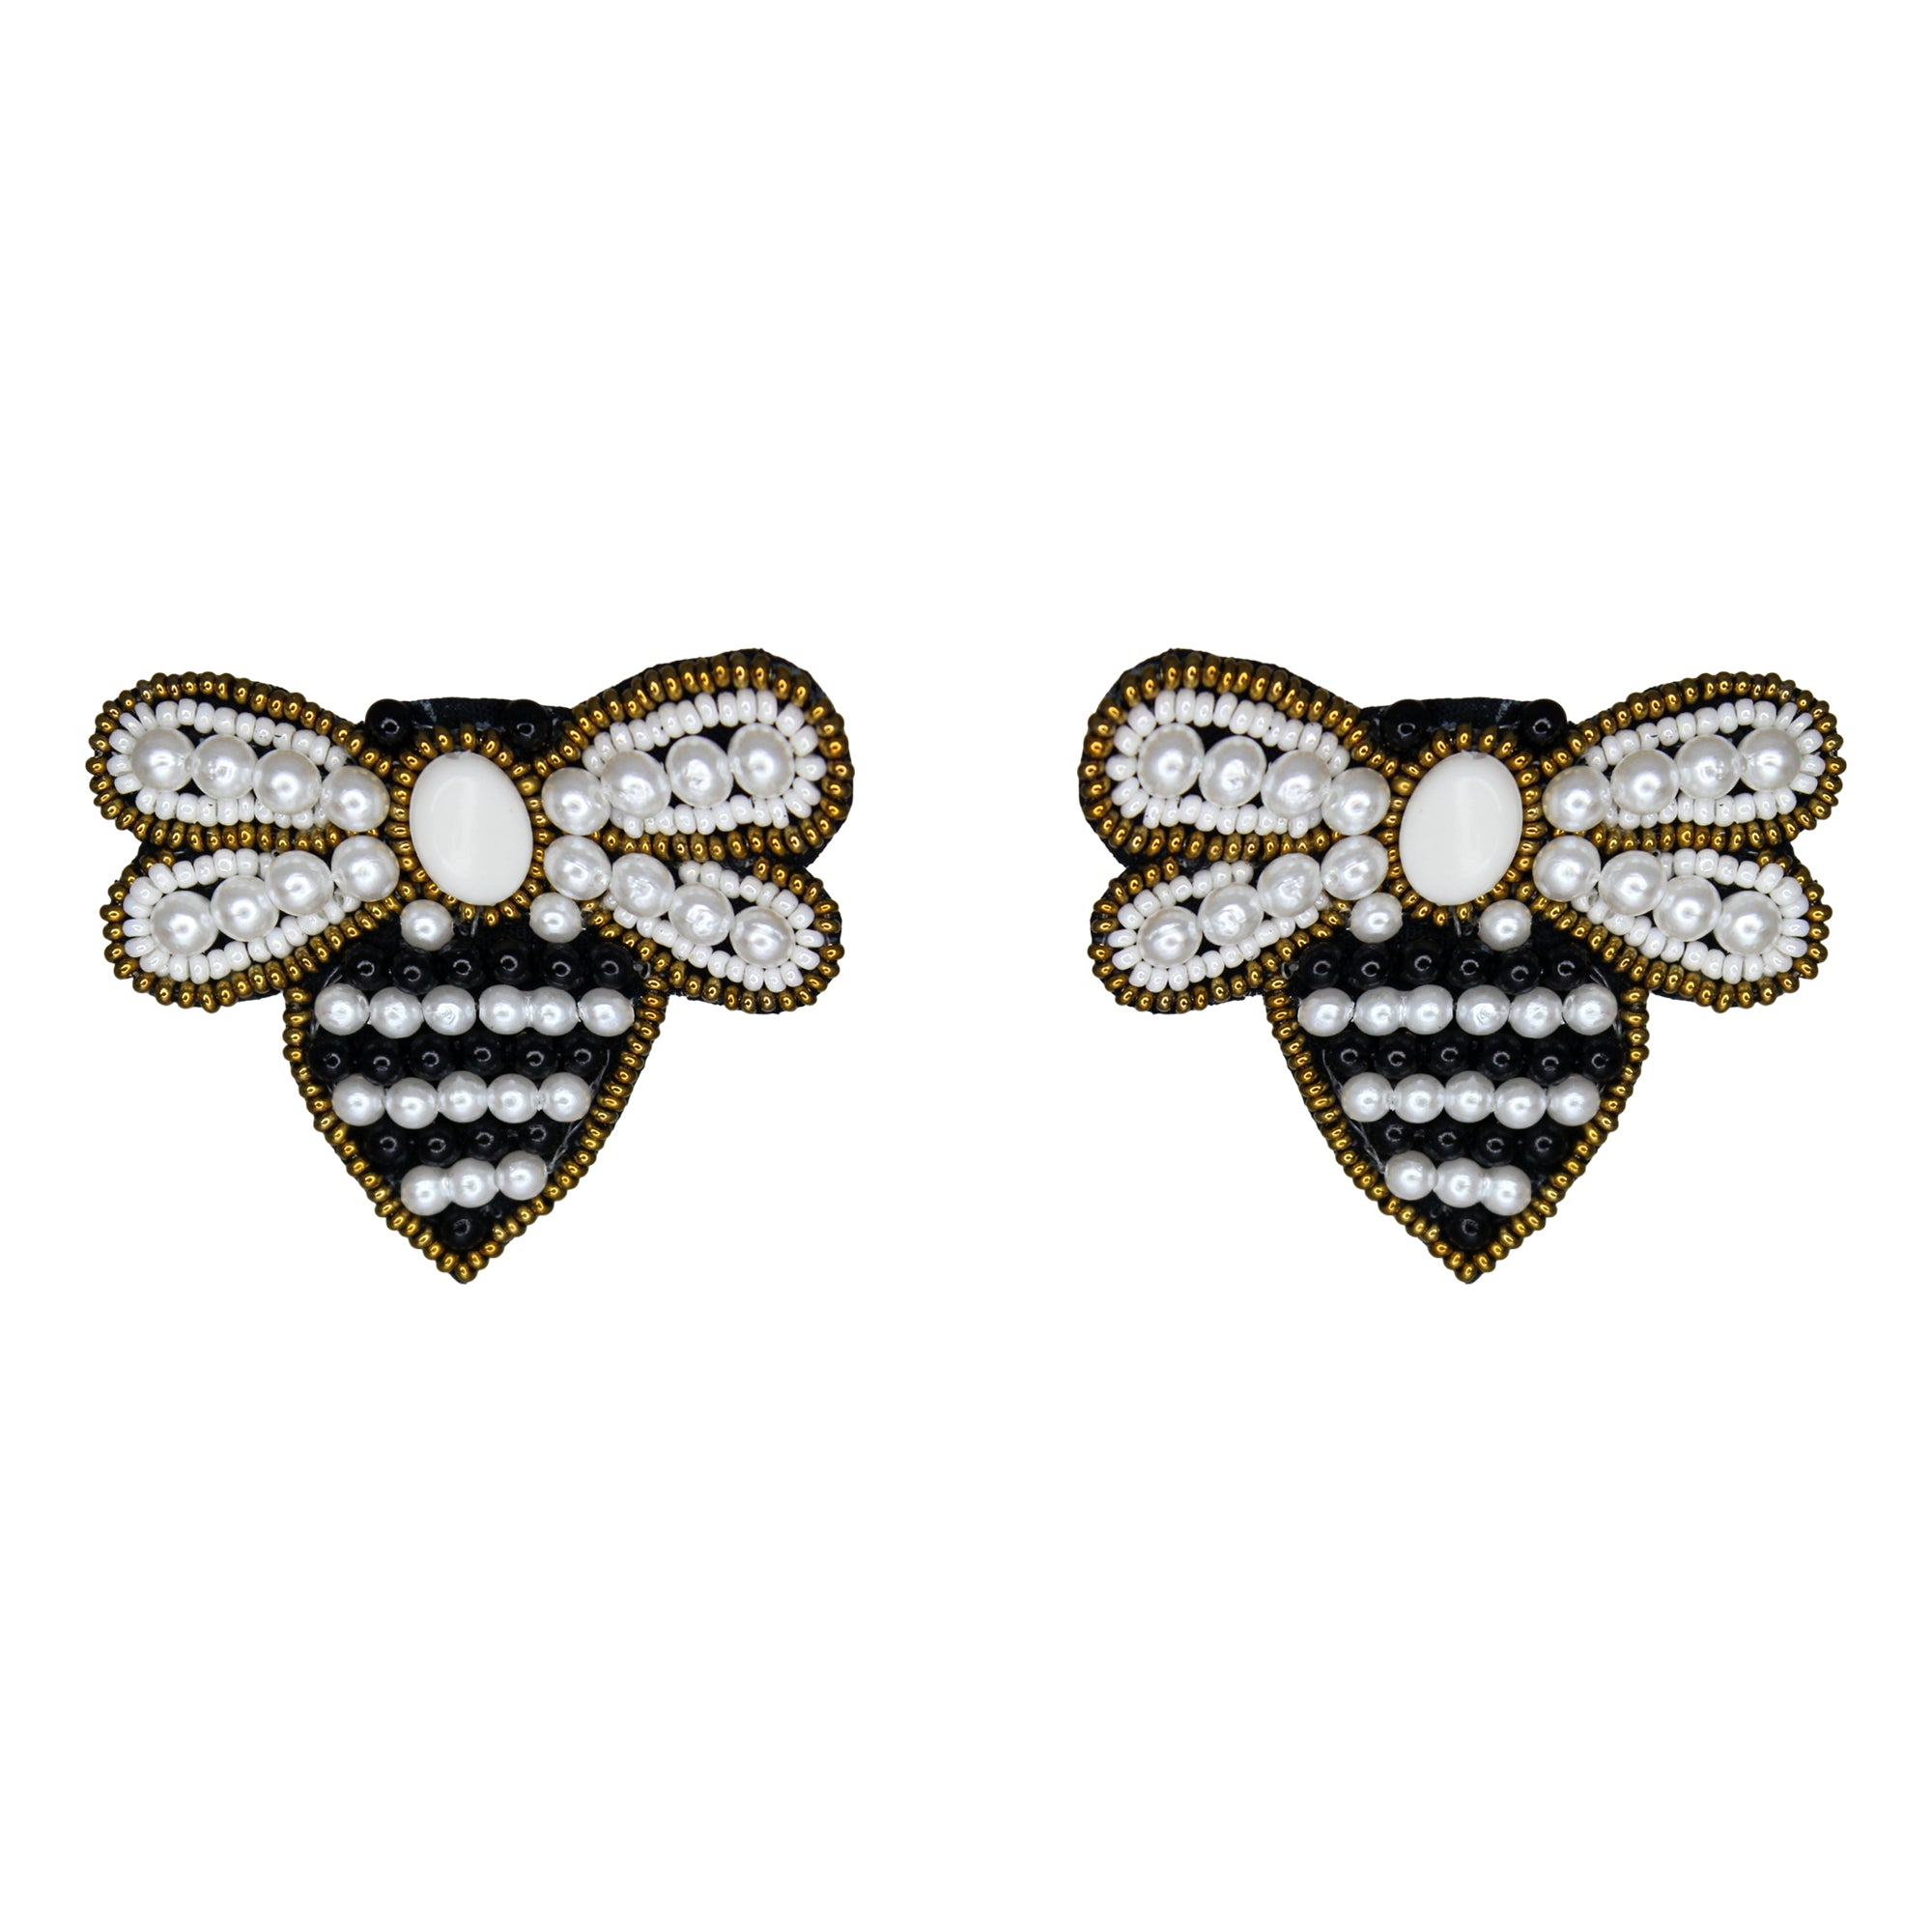 Hastkalakari Handmade Quirky Honey-Bee Design Beaded Dangler Earrings For Women